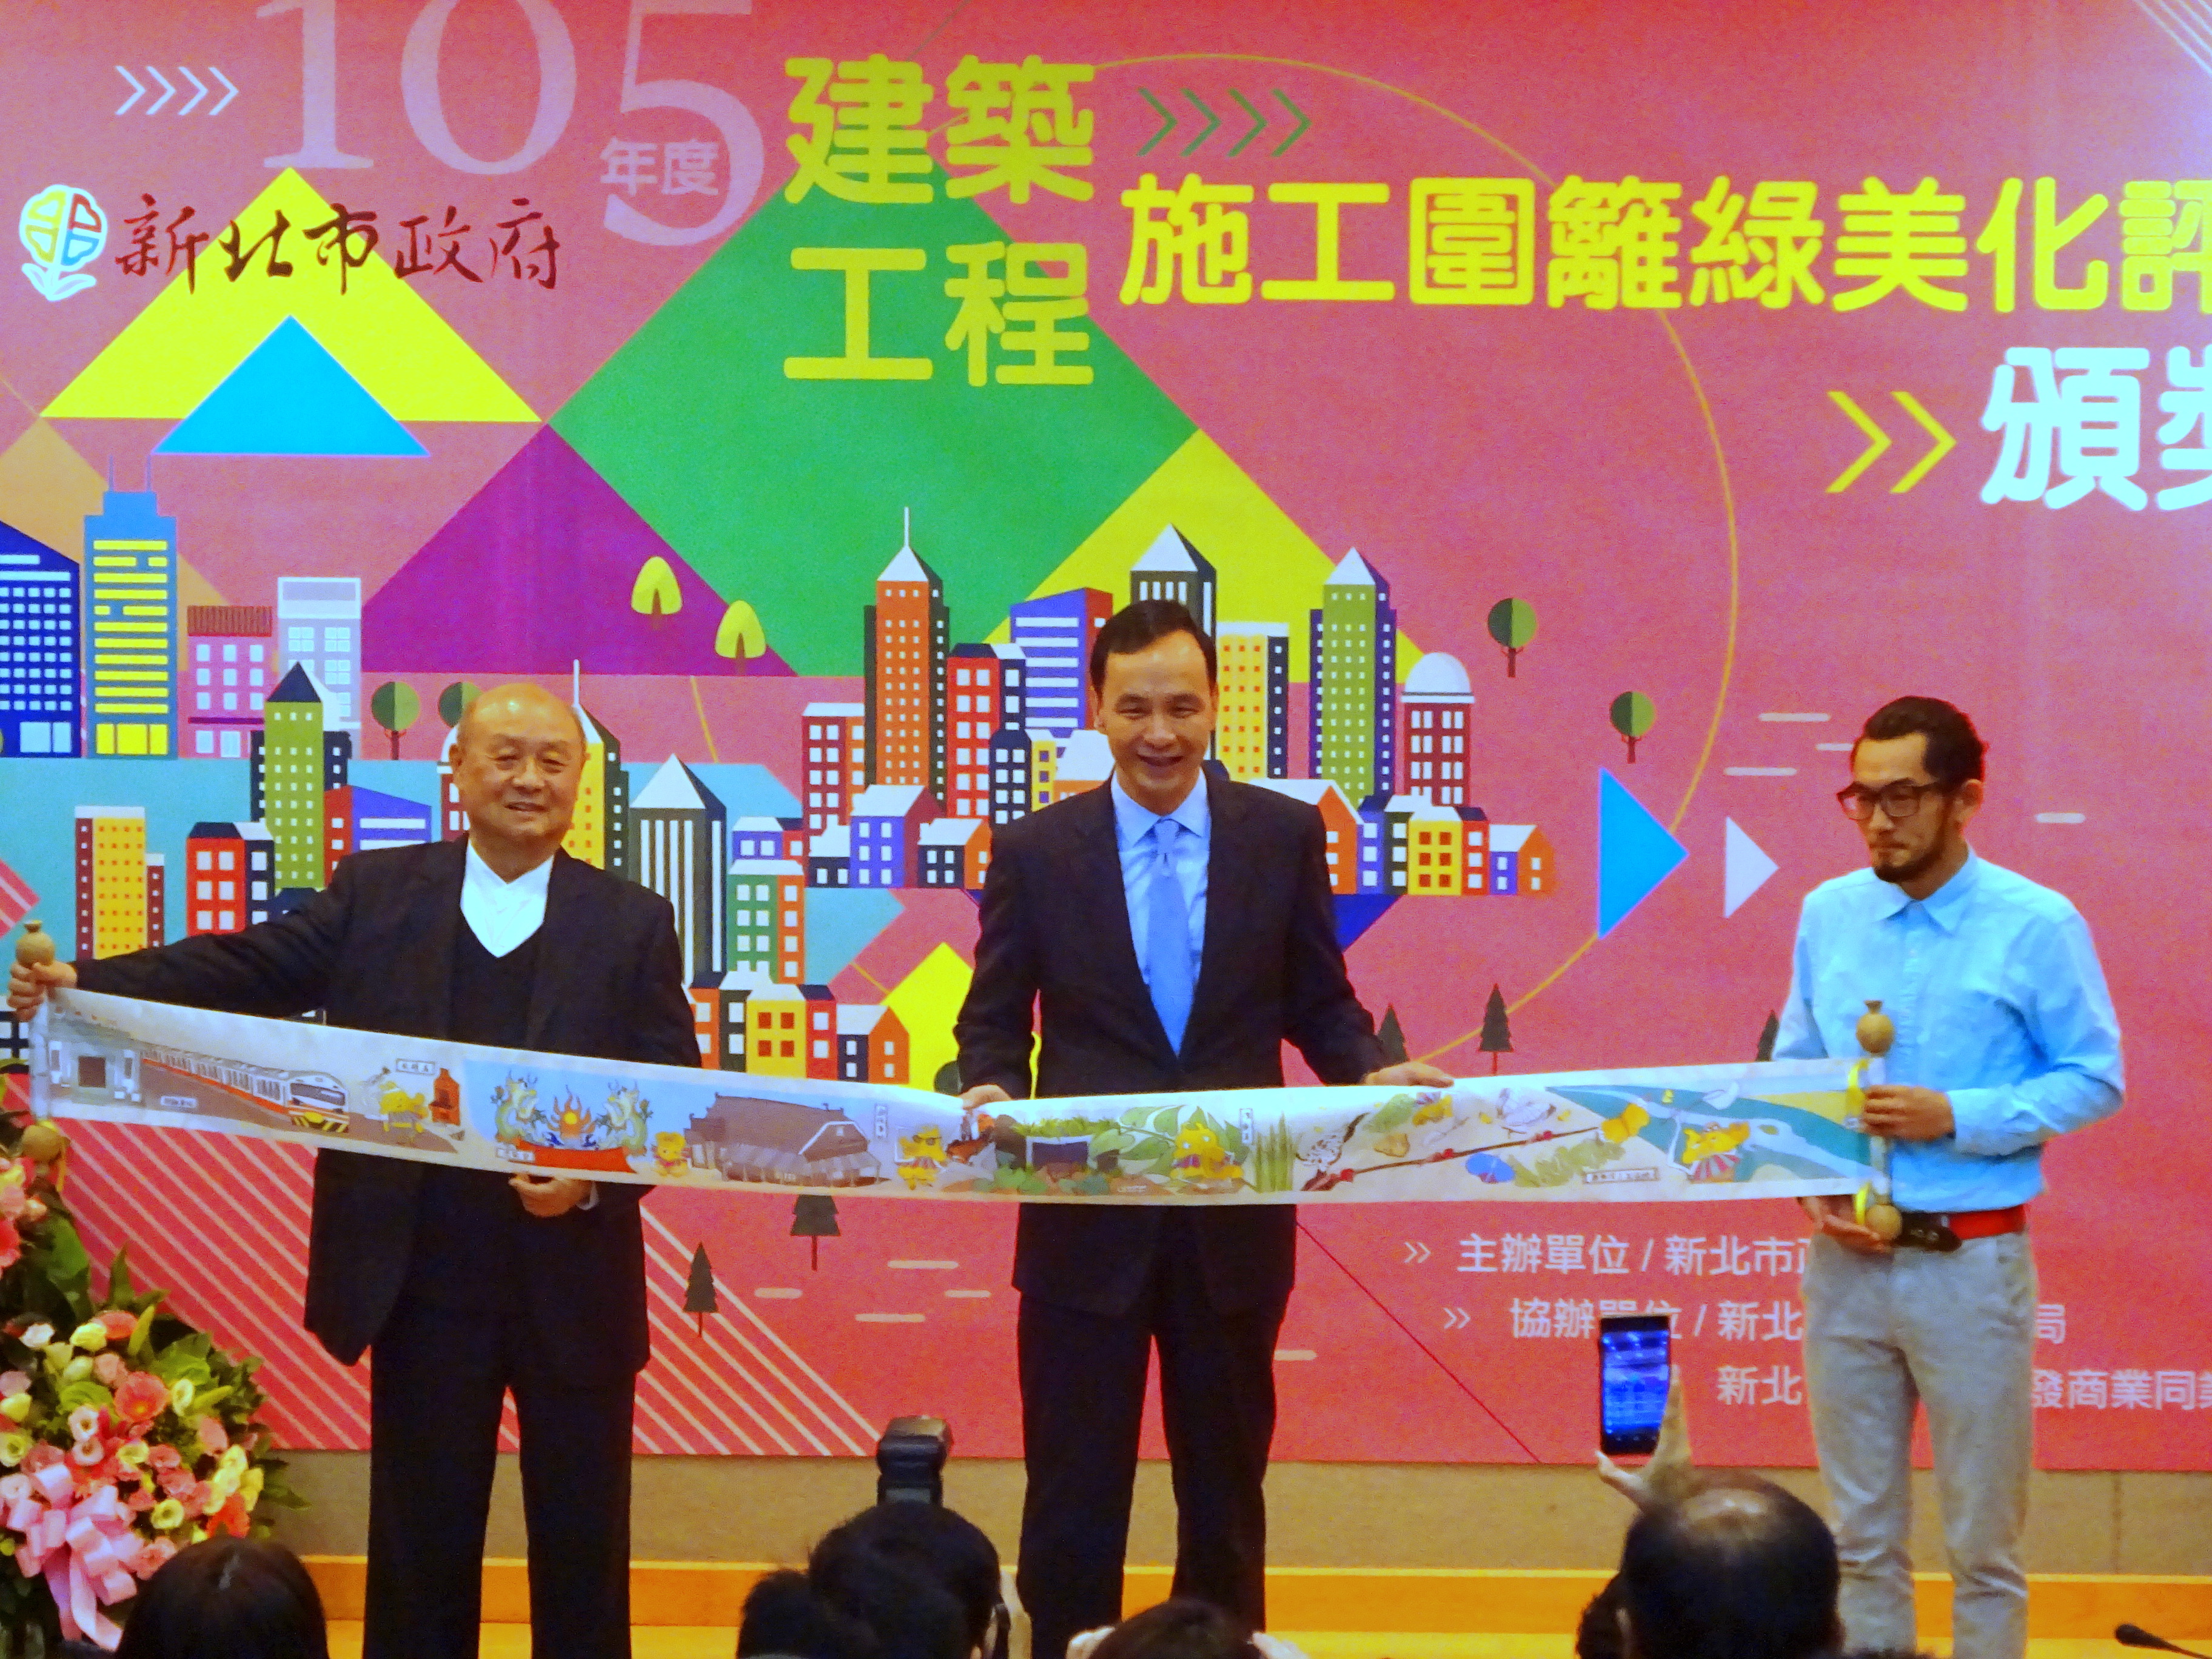 中華工程董事長嚴雋泰與藝術家彼得先生將施工圍籬彩繪製成捲軸布條送給市長